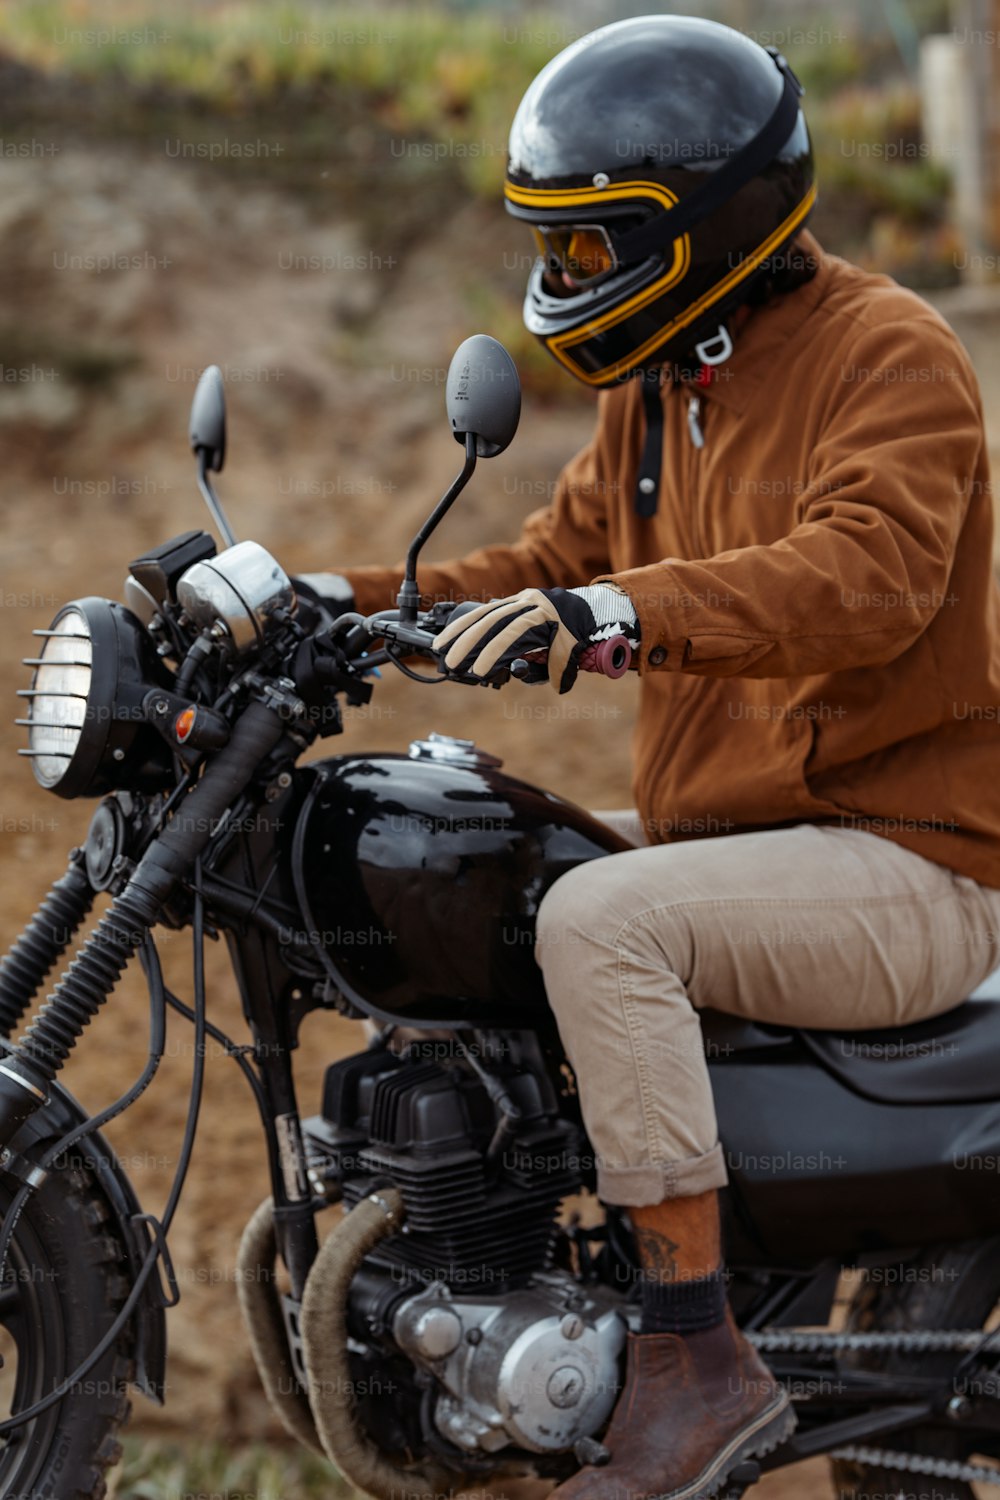 Un homme portant un casque conduit une moto